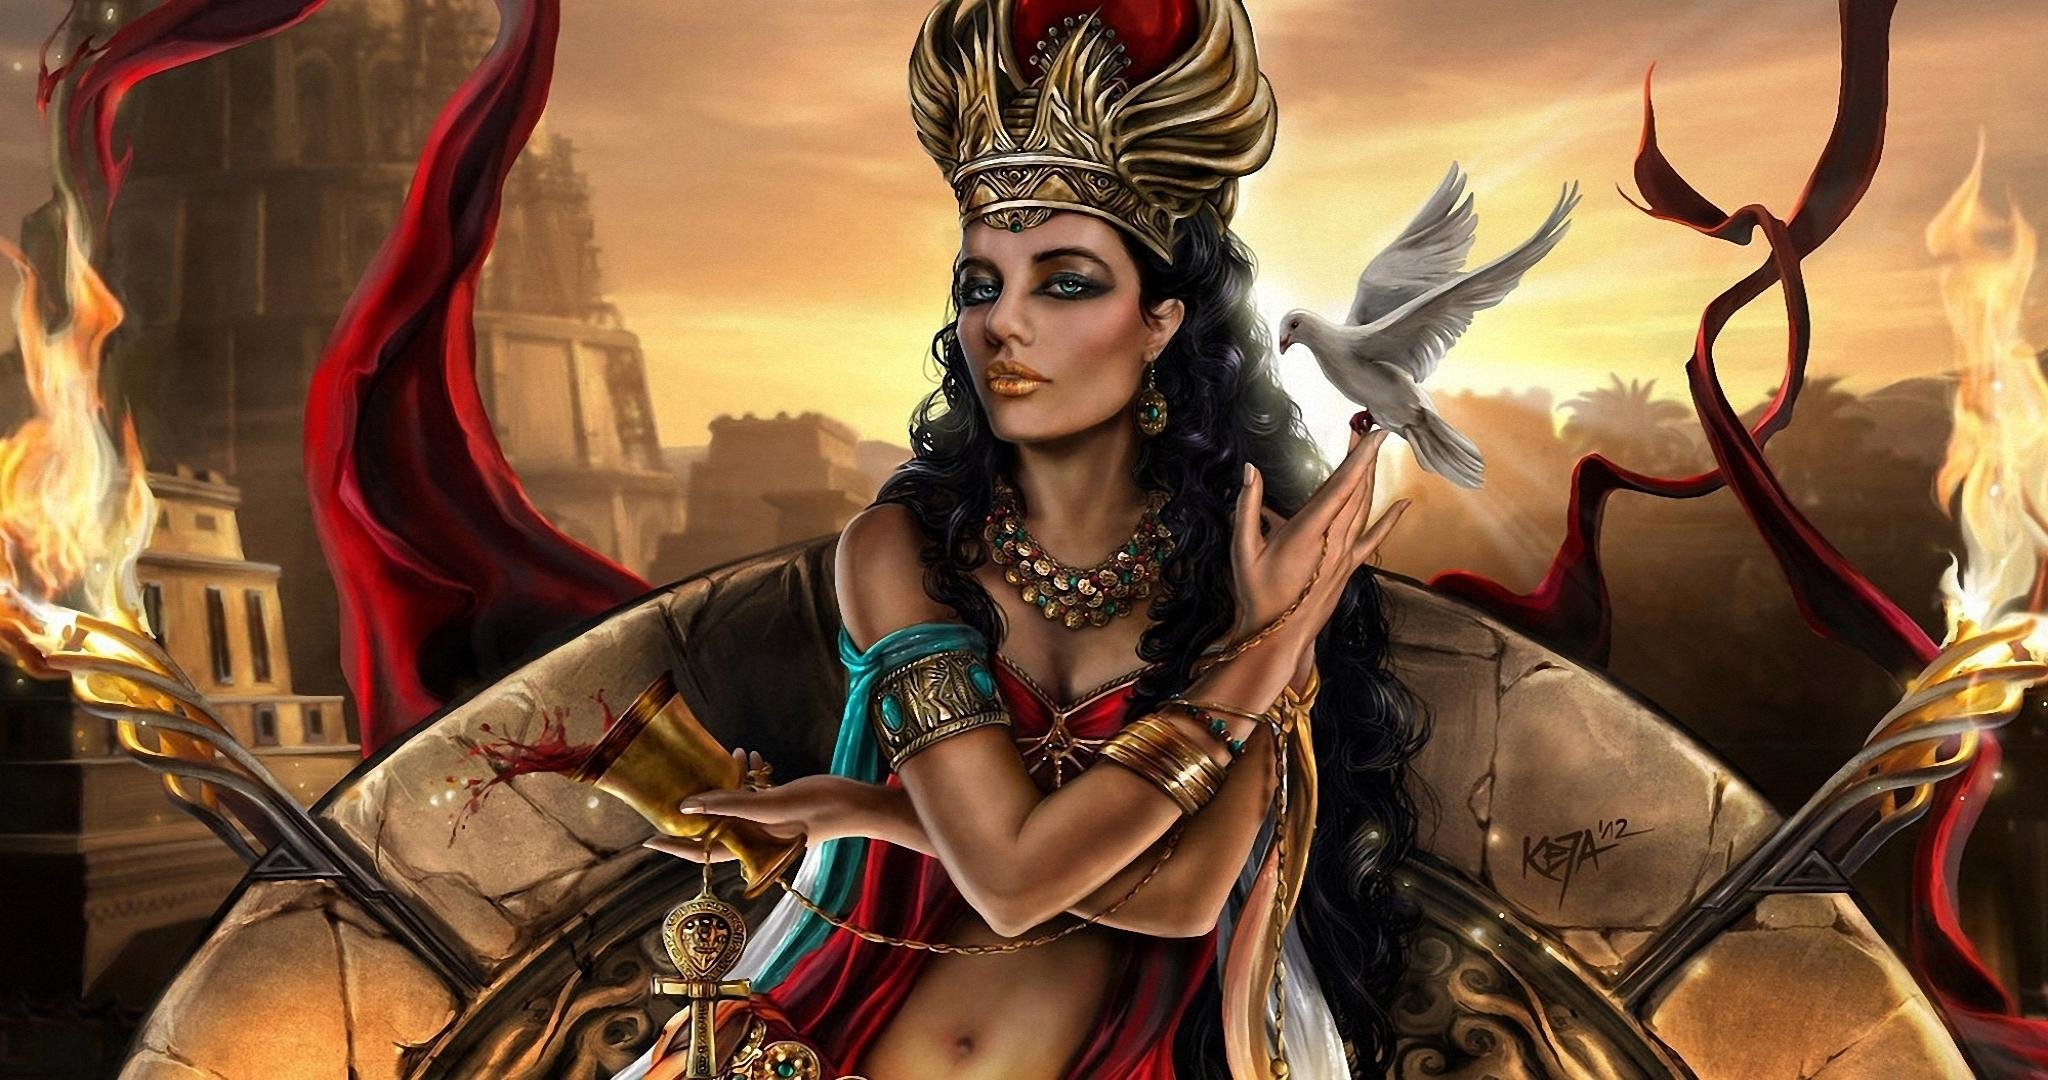 Free Download Gods Wallpaper Id - Goddess Inanna - HD Wallpaper 